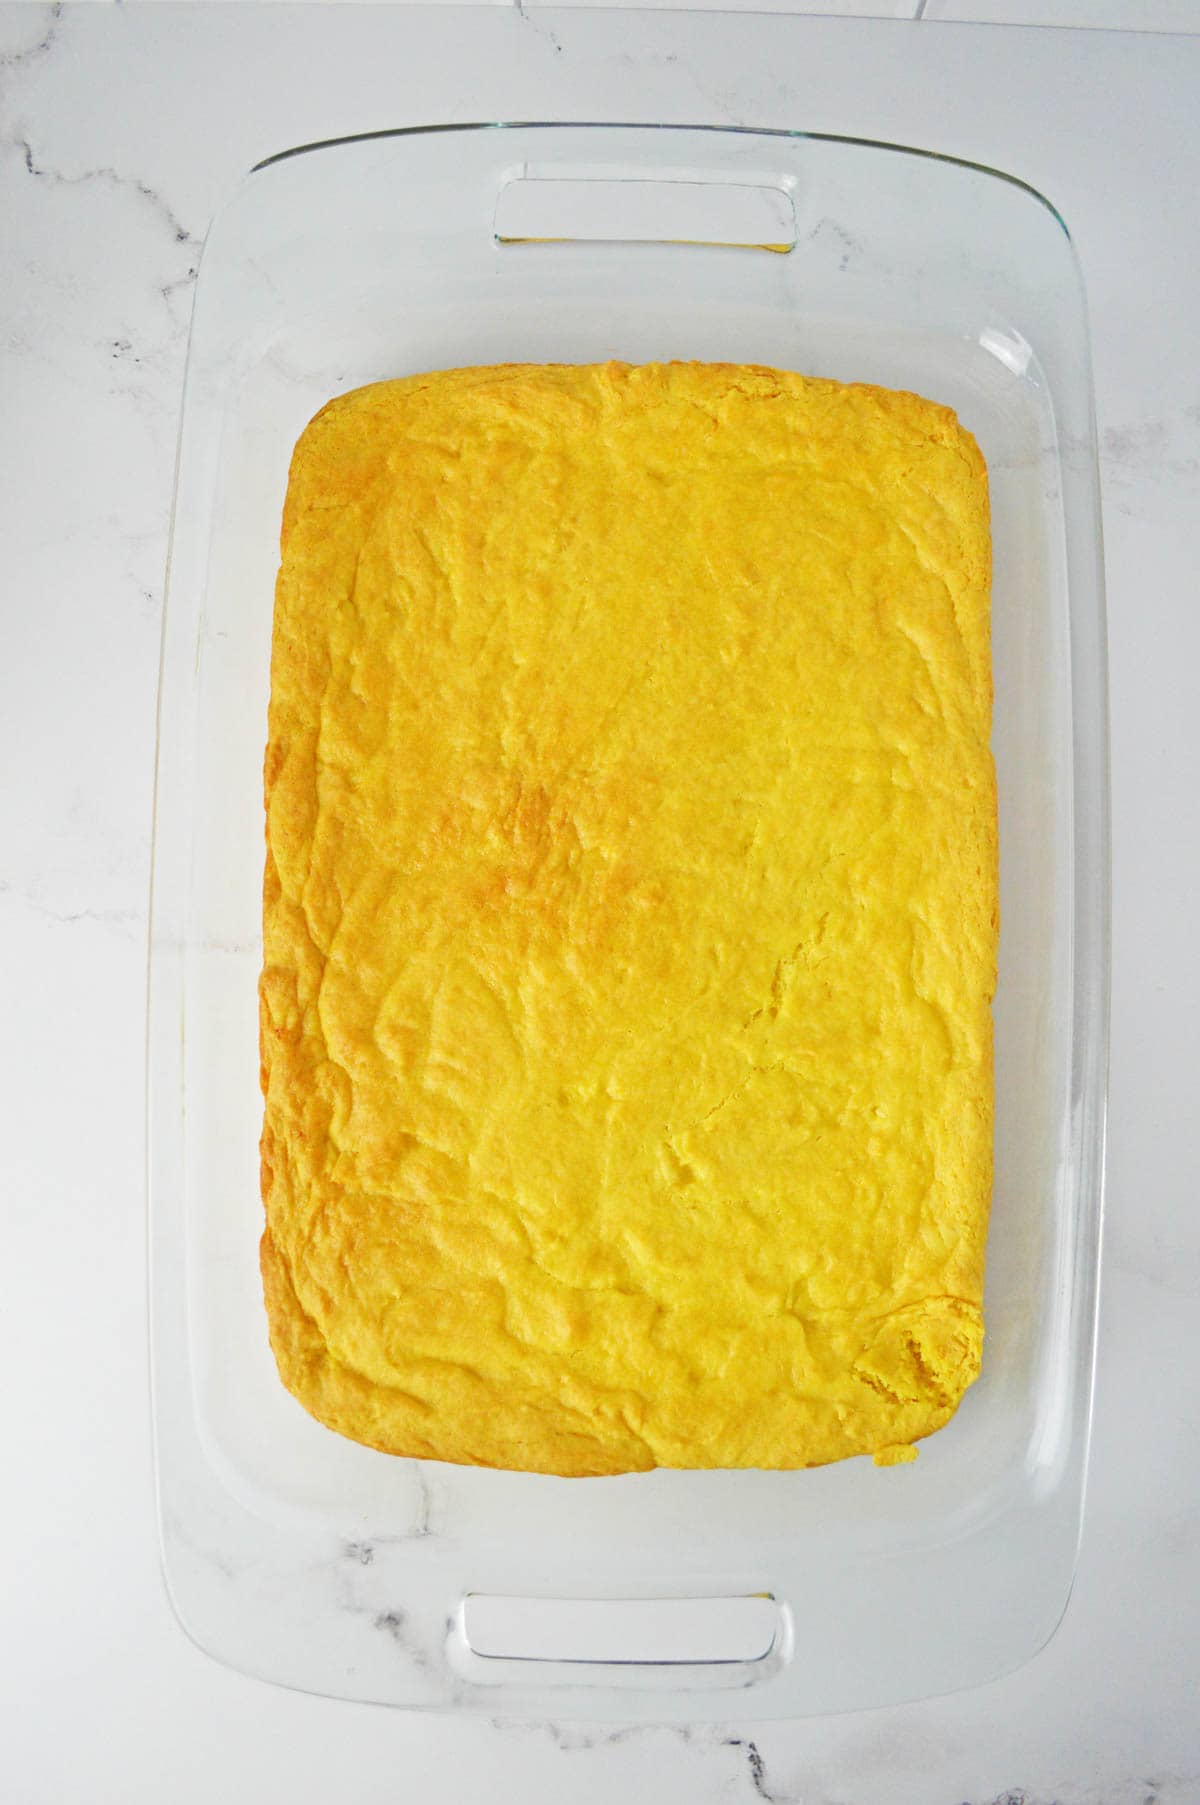 Cooked lemon bars in pan